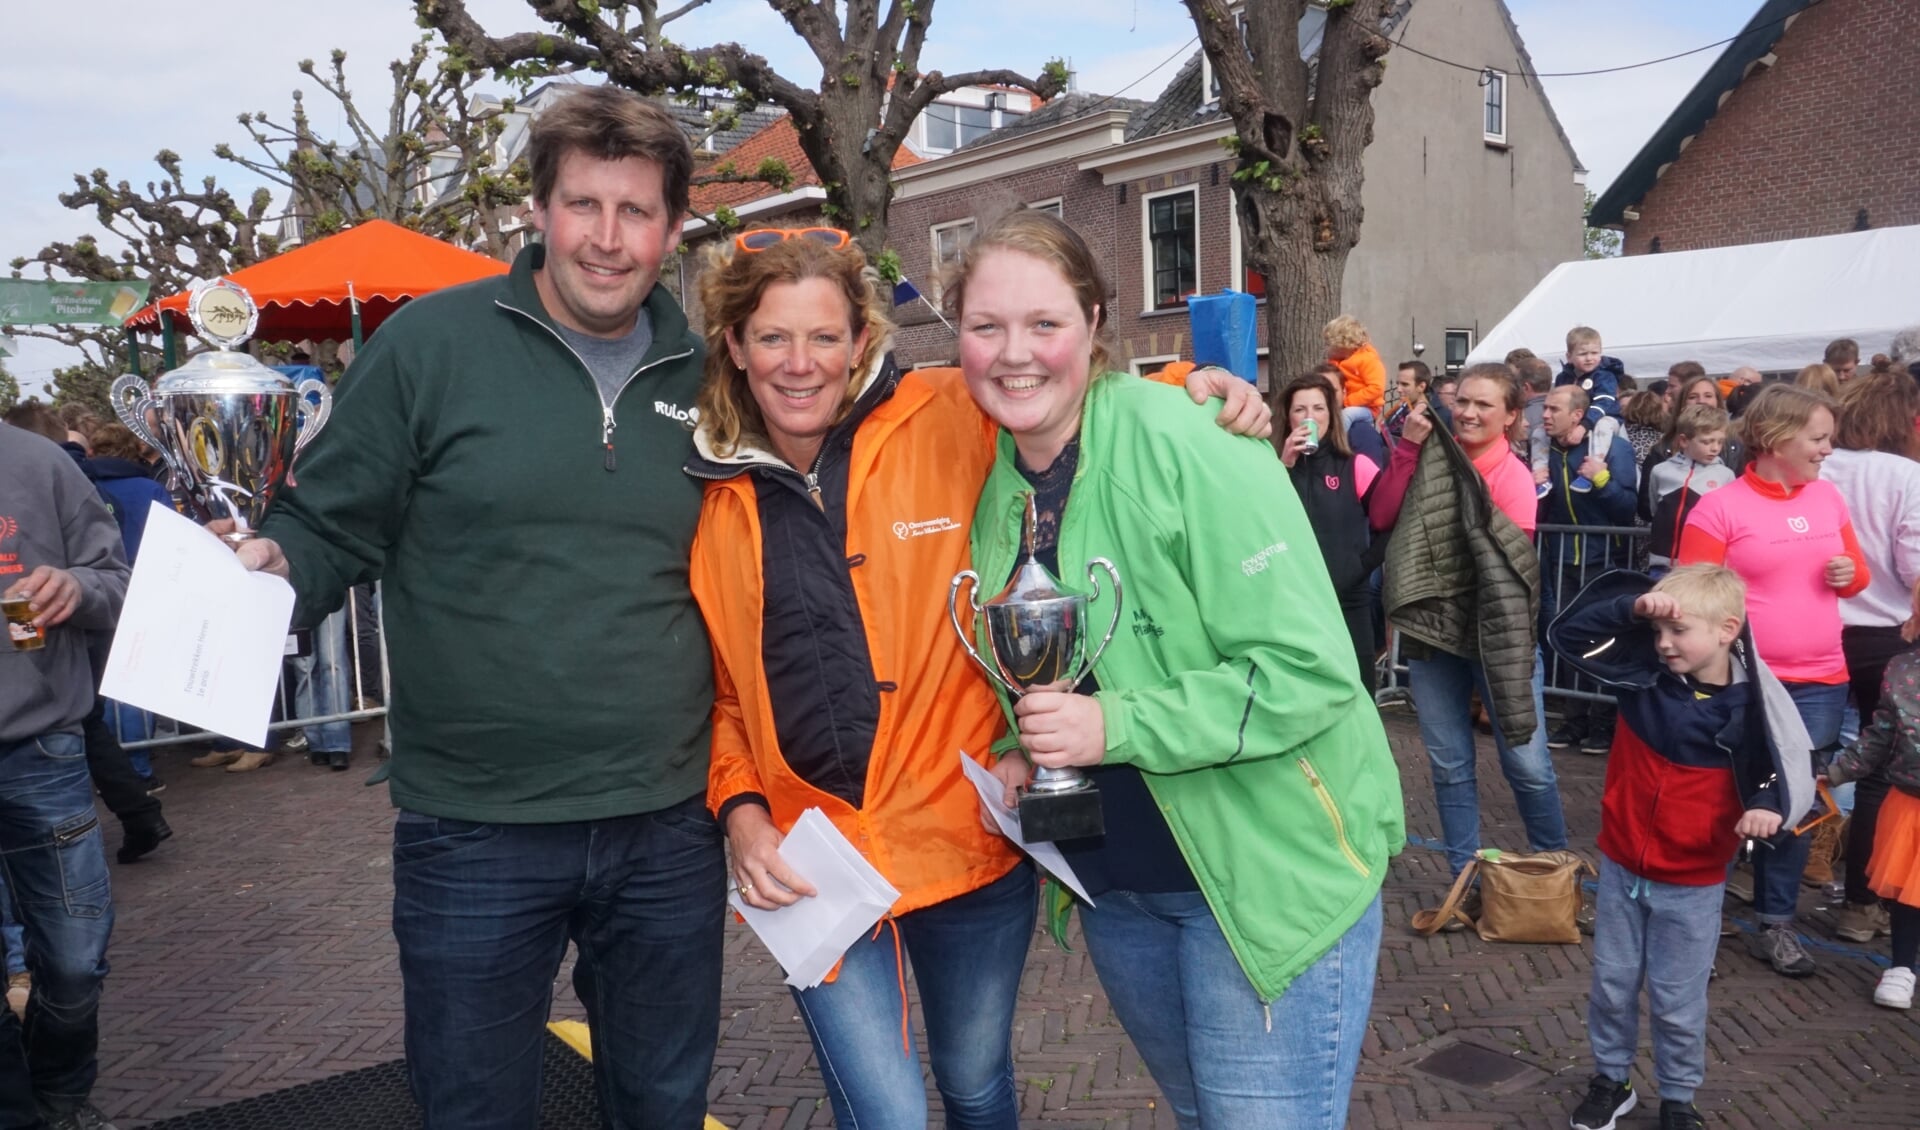 Aannemersbedrijf RuLo won bij de mannen en Moerkerks Plantenparadijs bij de vrouwen. Esmée van Herk van de oranjevereniging reikte de prijzen uit. Foto's: VSK